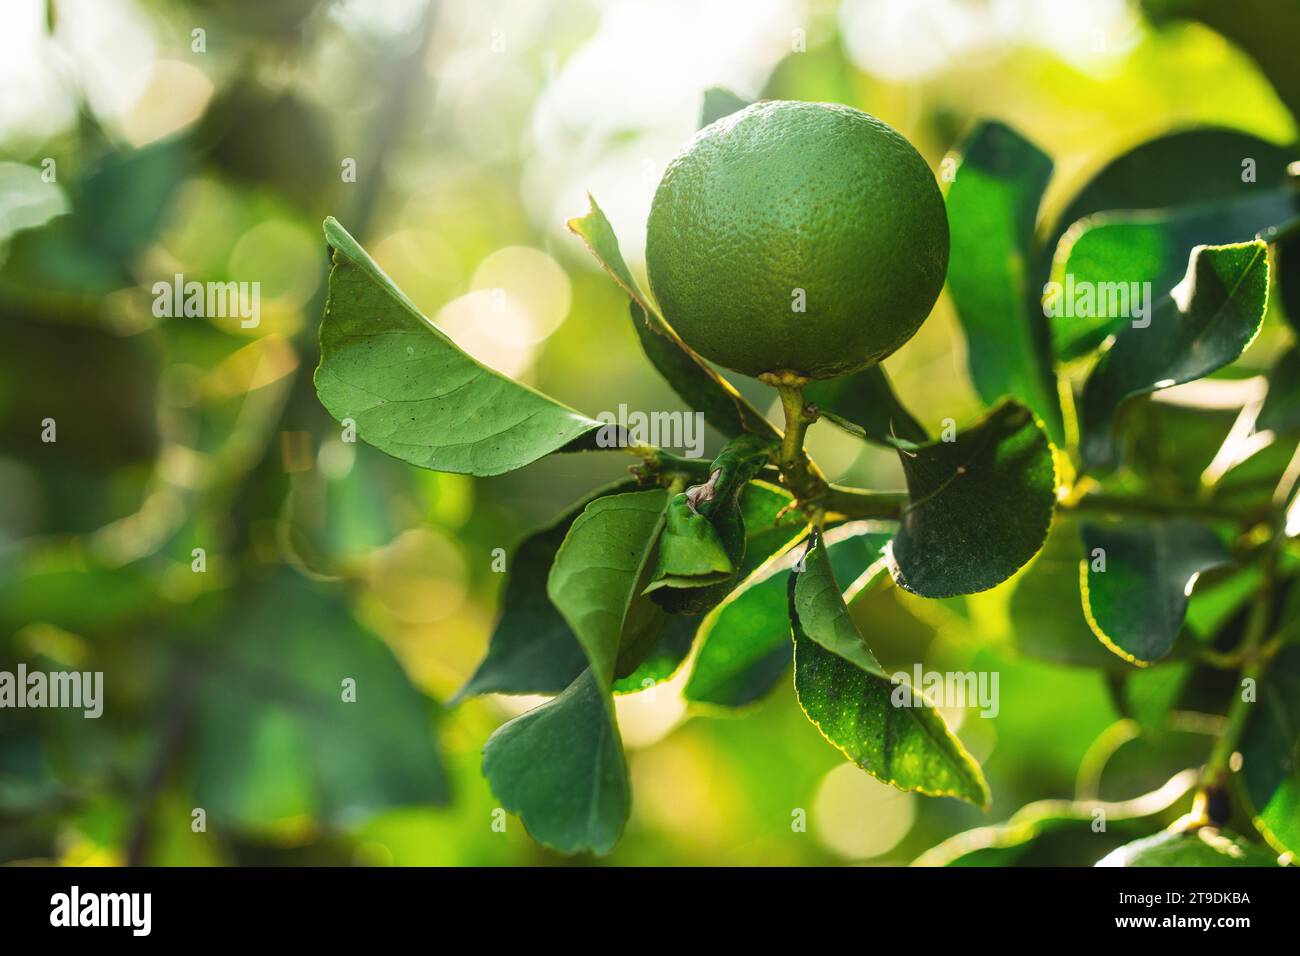 Nahaufnahme von Reifen grünen Zitronen auf dem kleinen immergrünen Baum Stockfoto